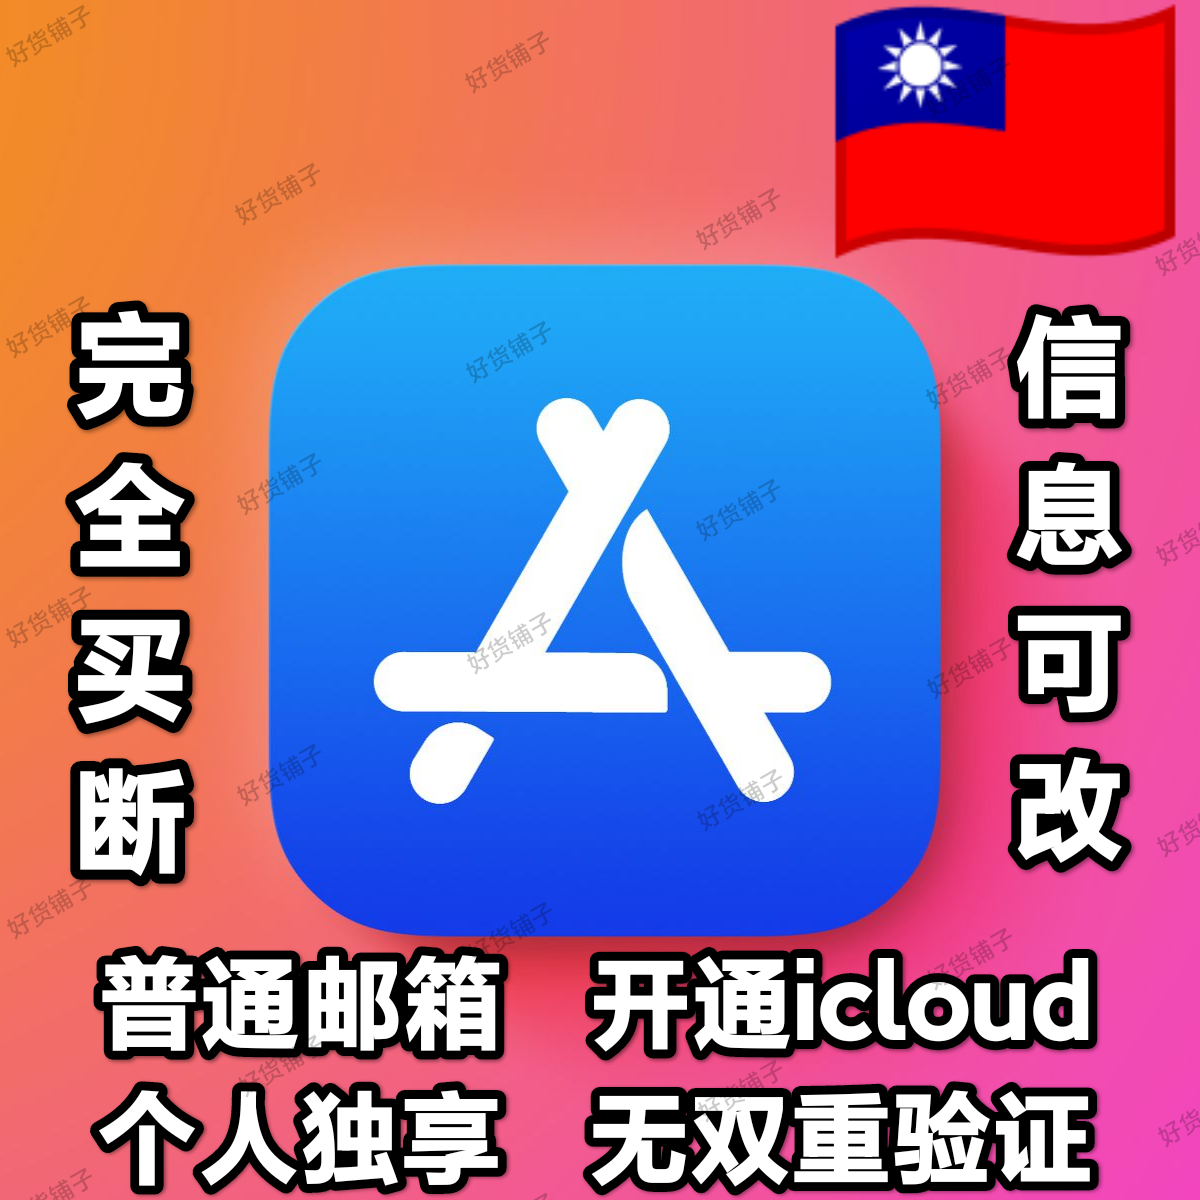 台湾全新普通邮箱空白苹果id（无双重验证）（激活iCloud）（自动发货）（教程和说明注意都在下面的详情，请看完）